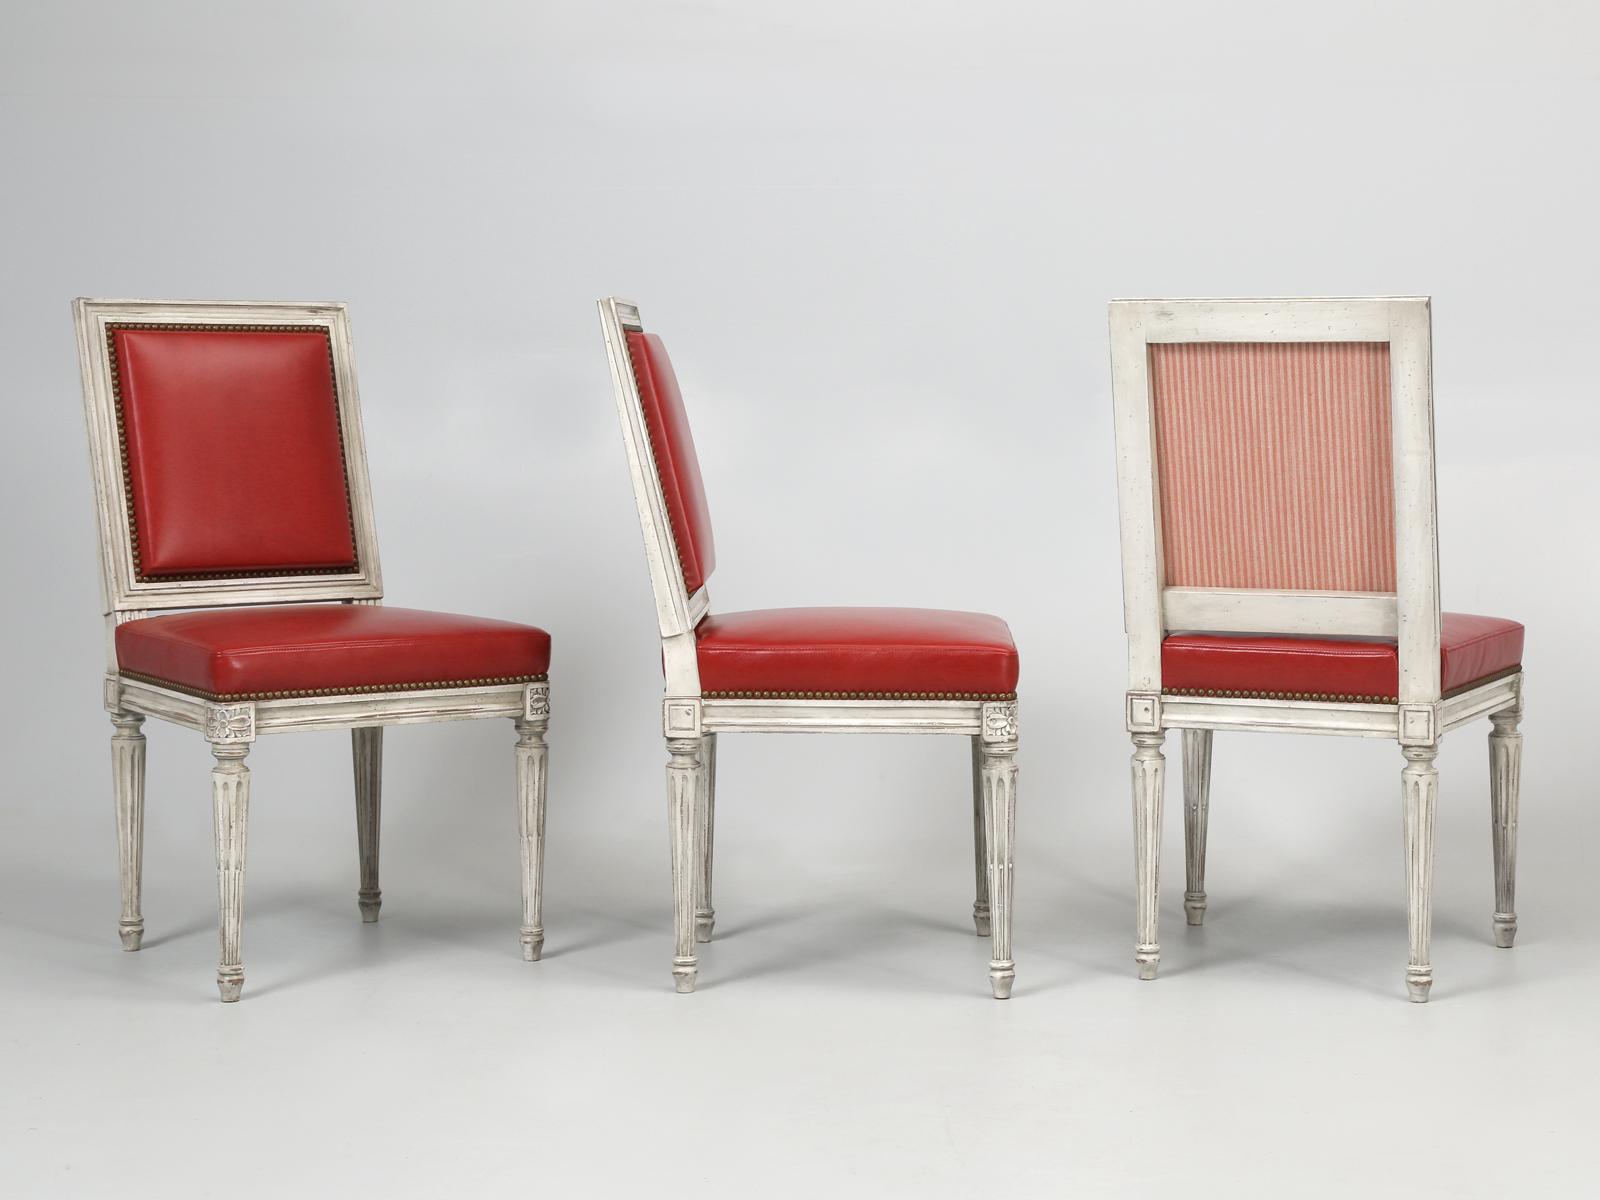 Obwohl diese Louis XVI-Esszimmerstühle für einen bestimmten Designer gebaut wurden, fanden wir sie außergewöhnlich und haben uns dafür entschieden, die Louis XVI-Esszimmerstühle in leuchtend rotem Leder vorzustellen. Old Plank bietet unsere